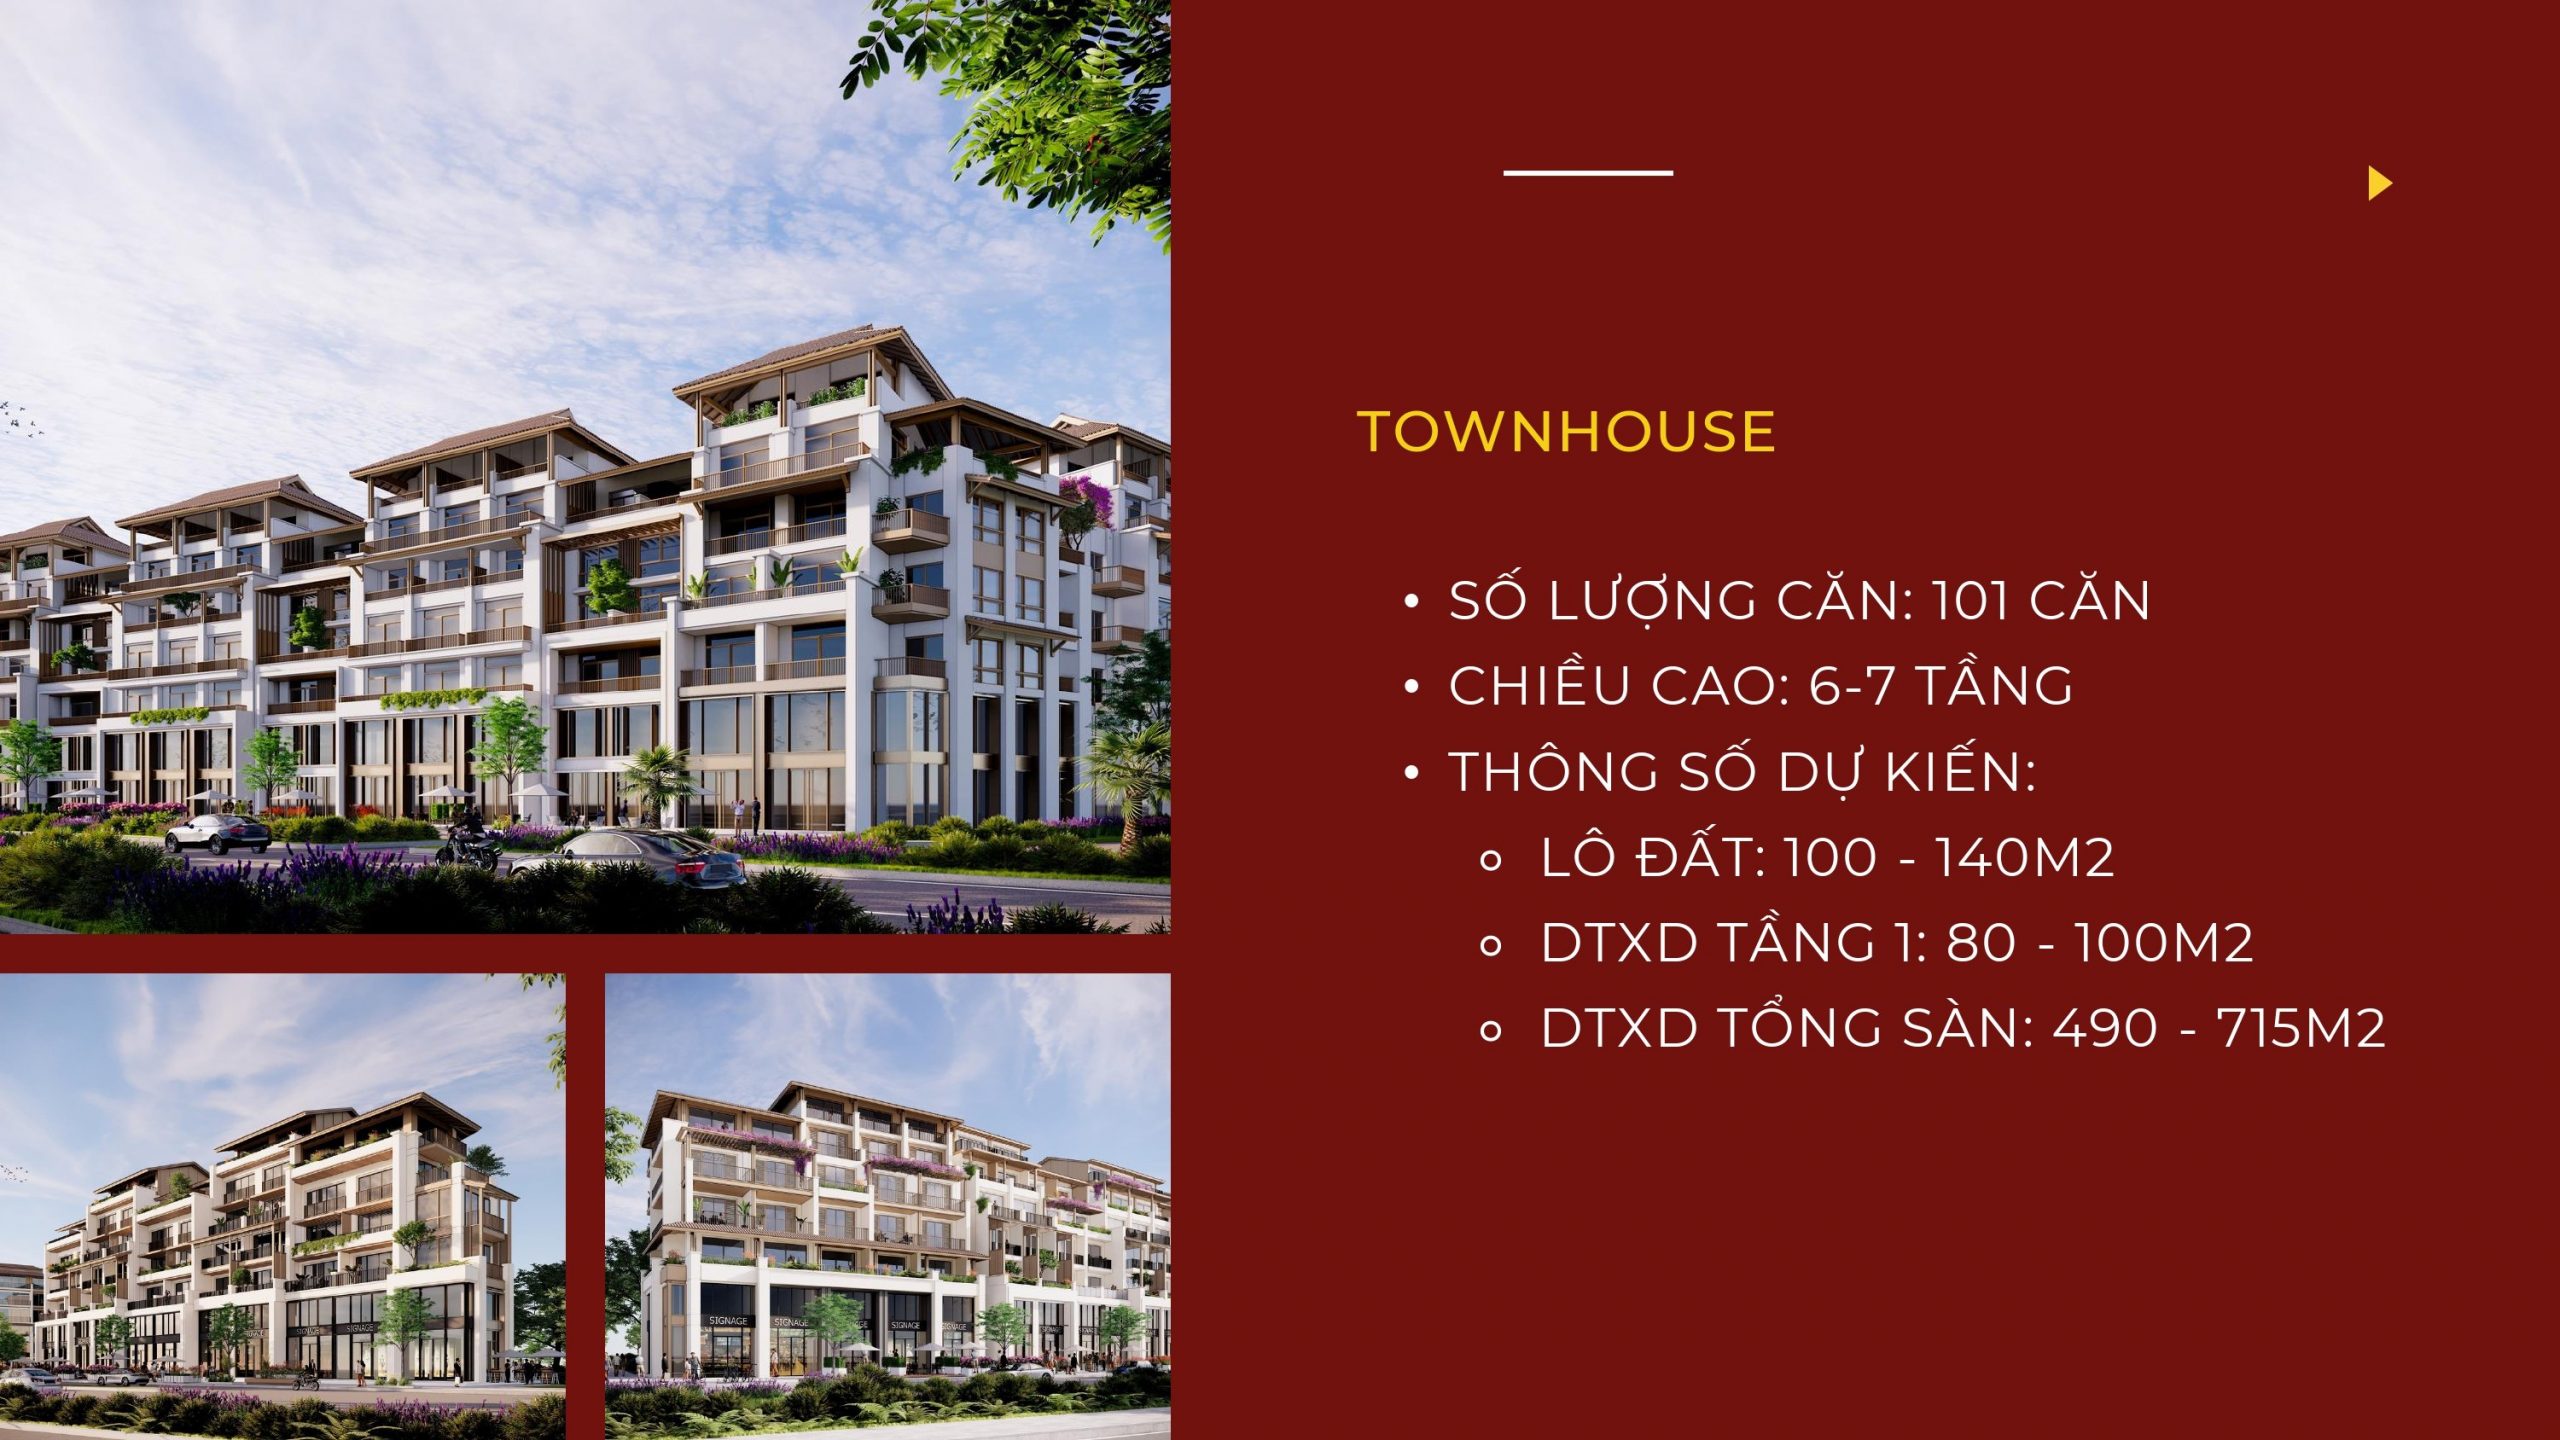 Sun Cosmo Residence Da Nang: Dự án căn hộ - biệt thự - nhà phố tại Đà Nẵng 5